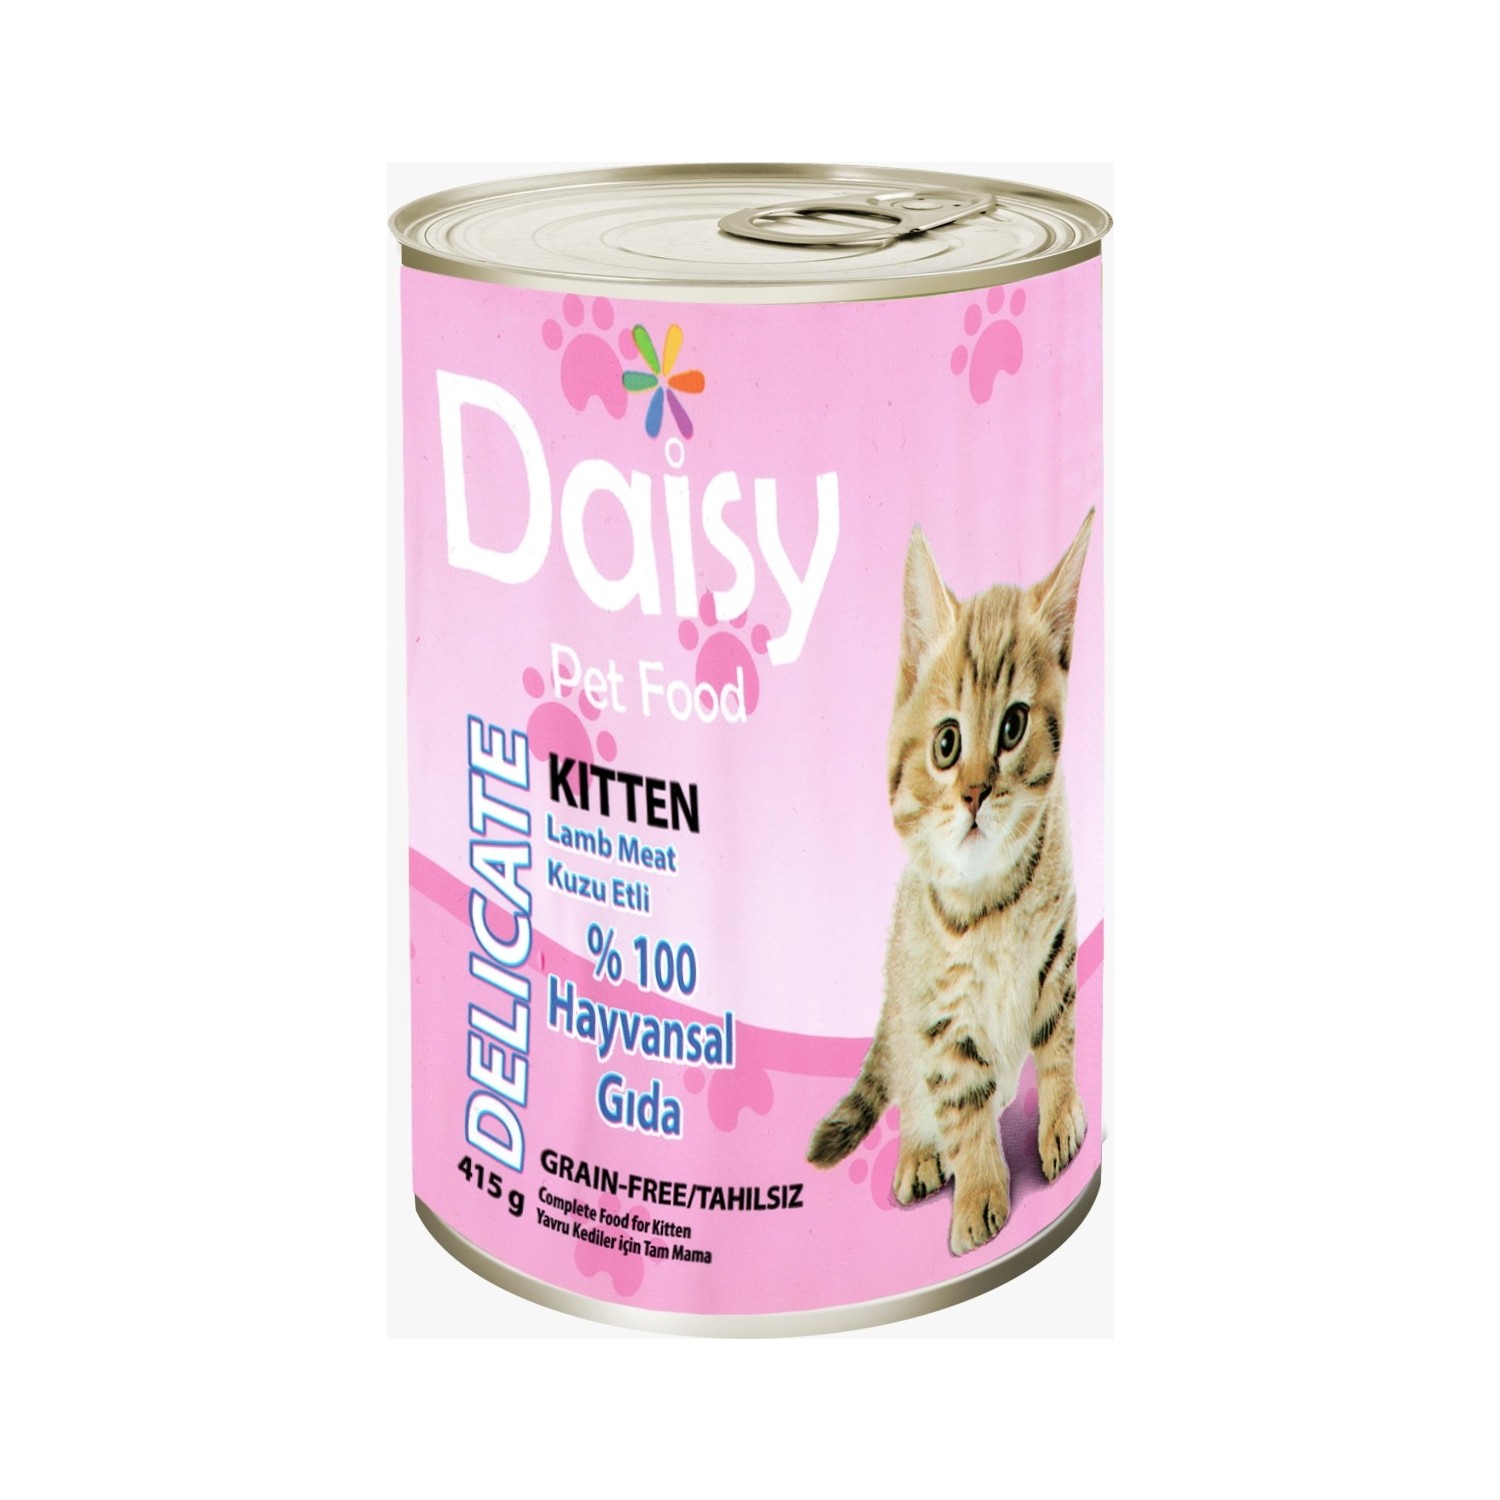 Daisy Tahılsız Kuzu Etli Konserve Yavru Kedi Maması 415 gr Fiyatı